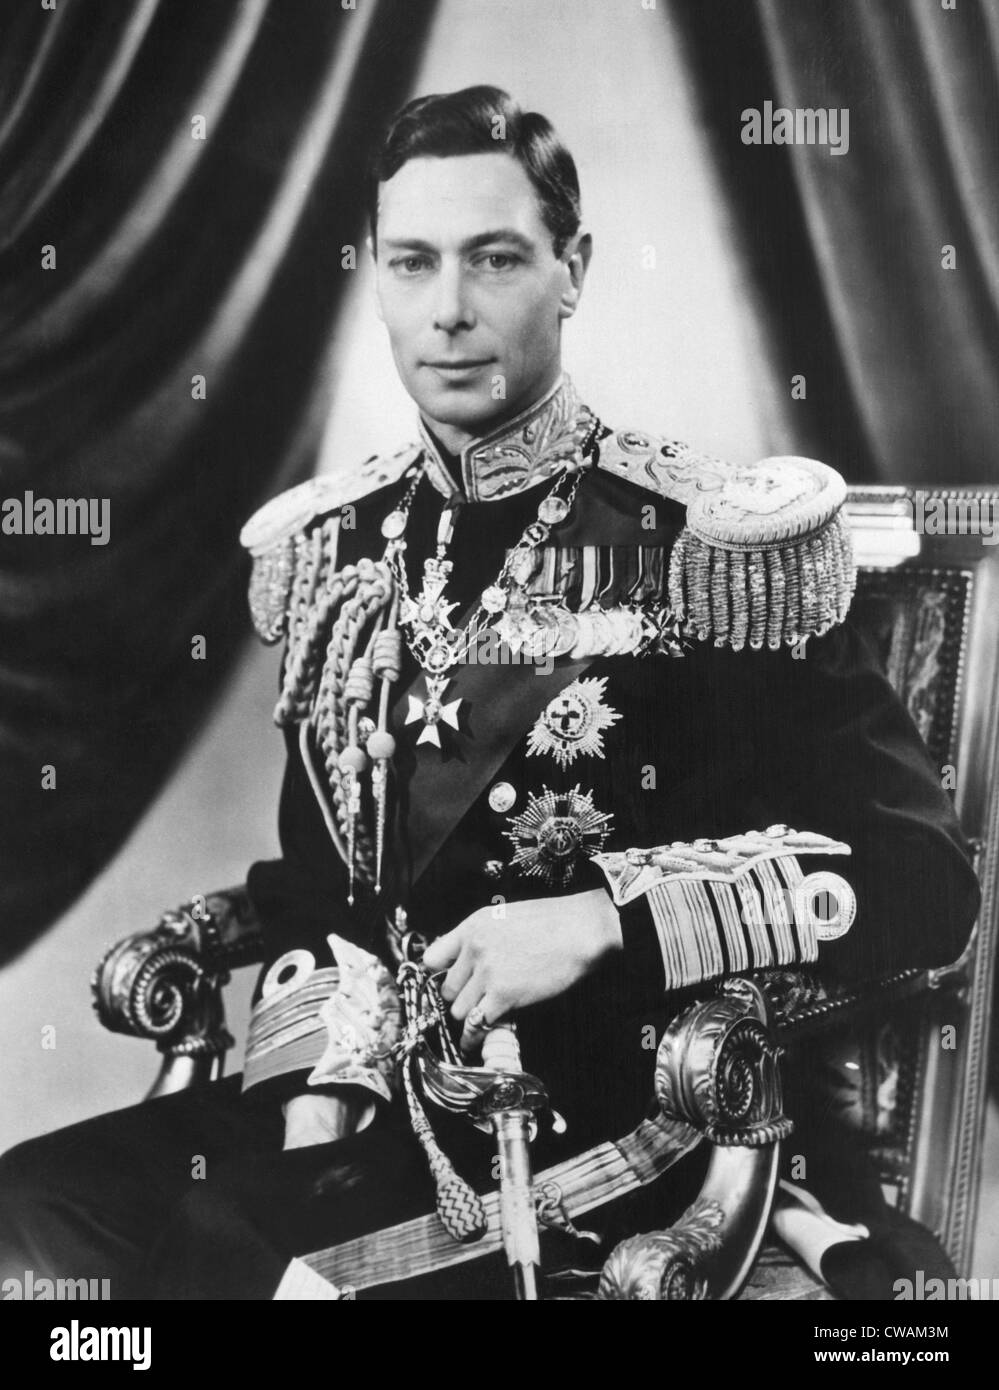 El rey Jorge VI (1895-1952), Rey del Reino Unido, 3 de mayo de 1937. Cortesía: CSU Archives / Everett Collection Foto de stock